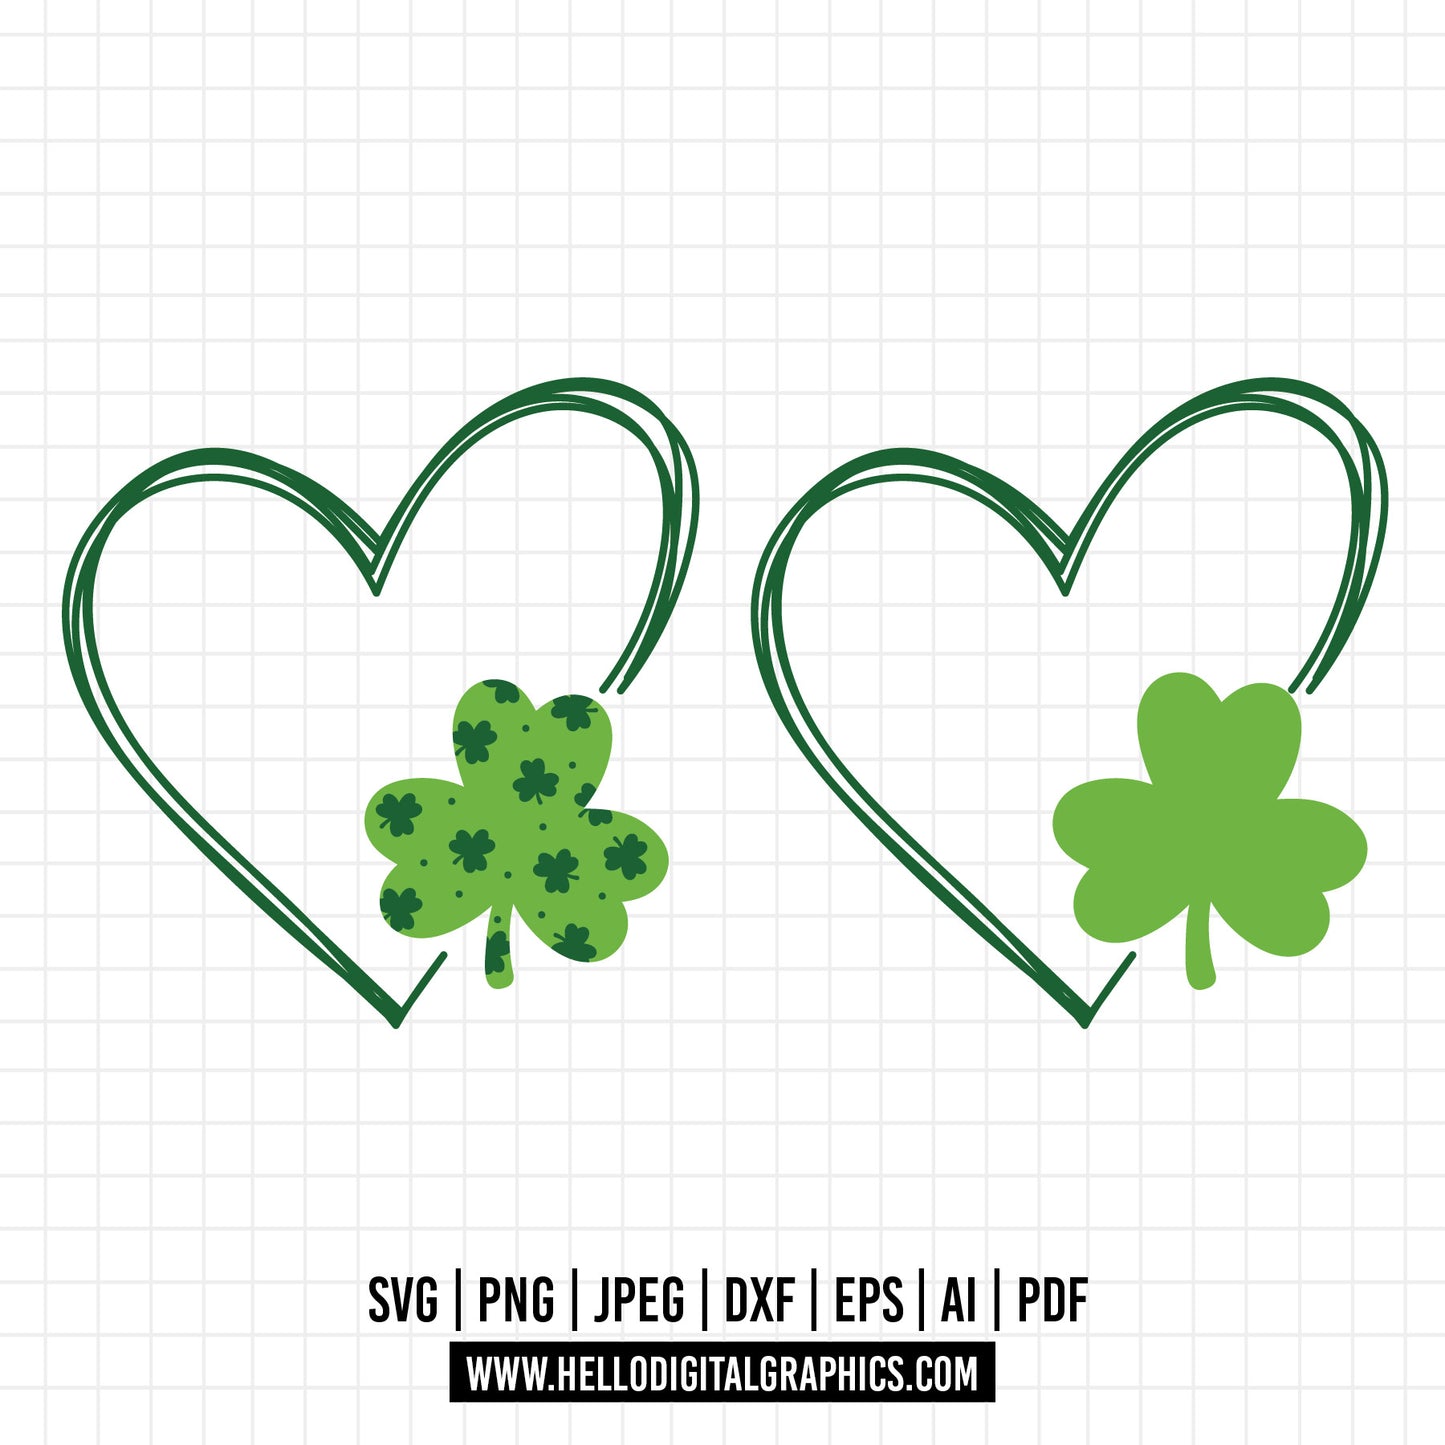 COD978 Saint Patrick's Day Heart svg, Saint Patrick's Day svg, Heart with Shamrocks SVG File- St. Patrick's Cut File